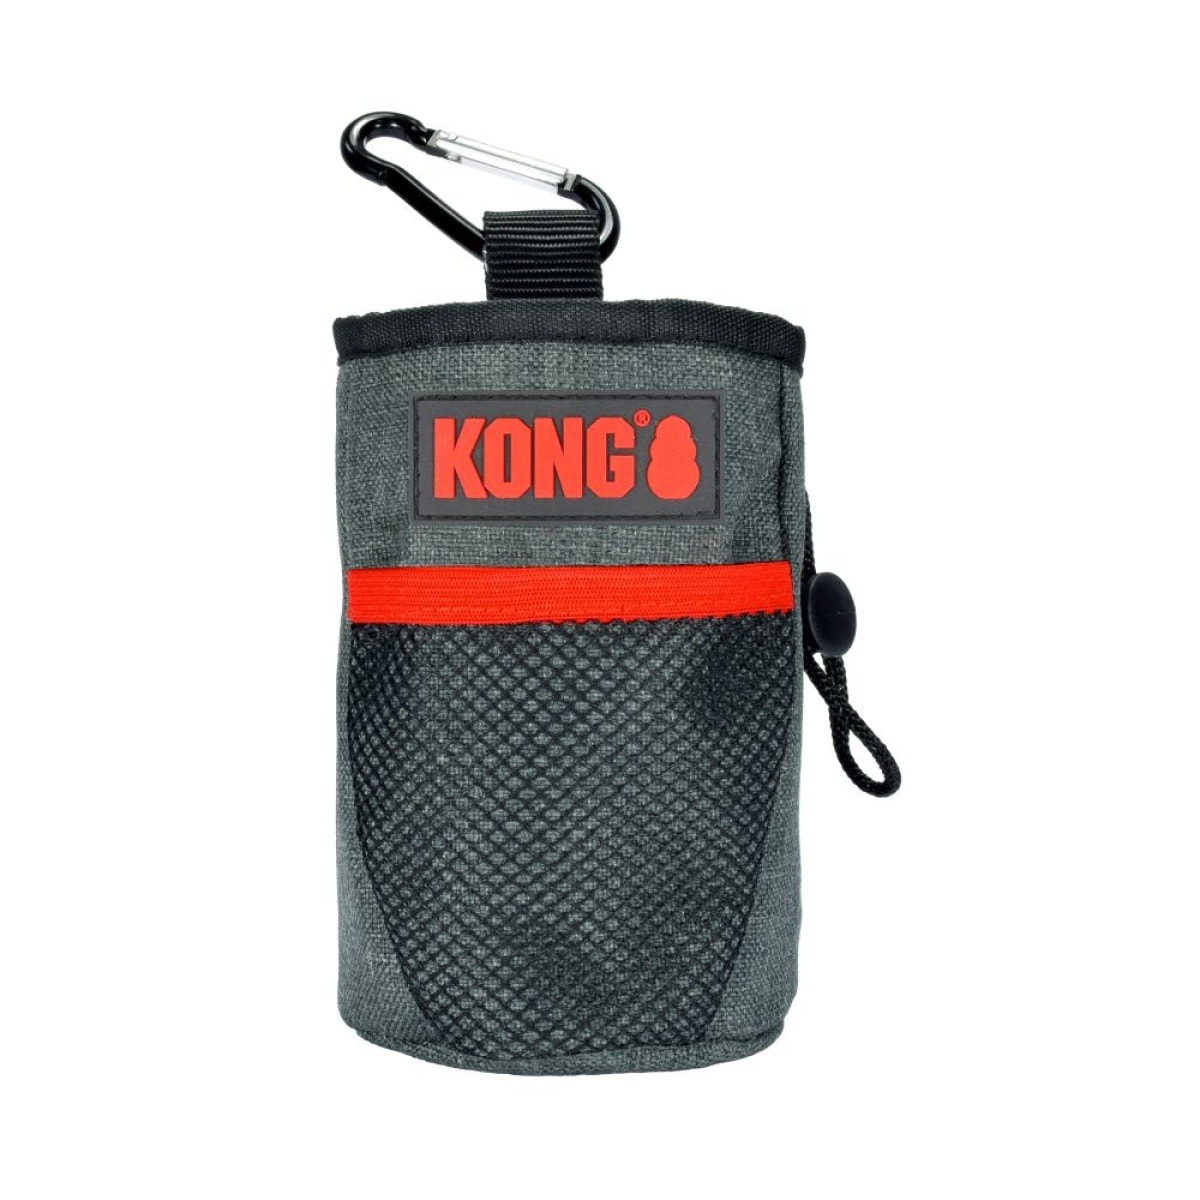 KONG Treat Bag Main Image